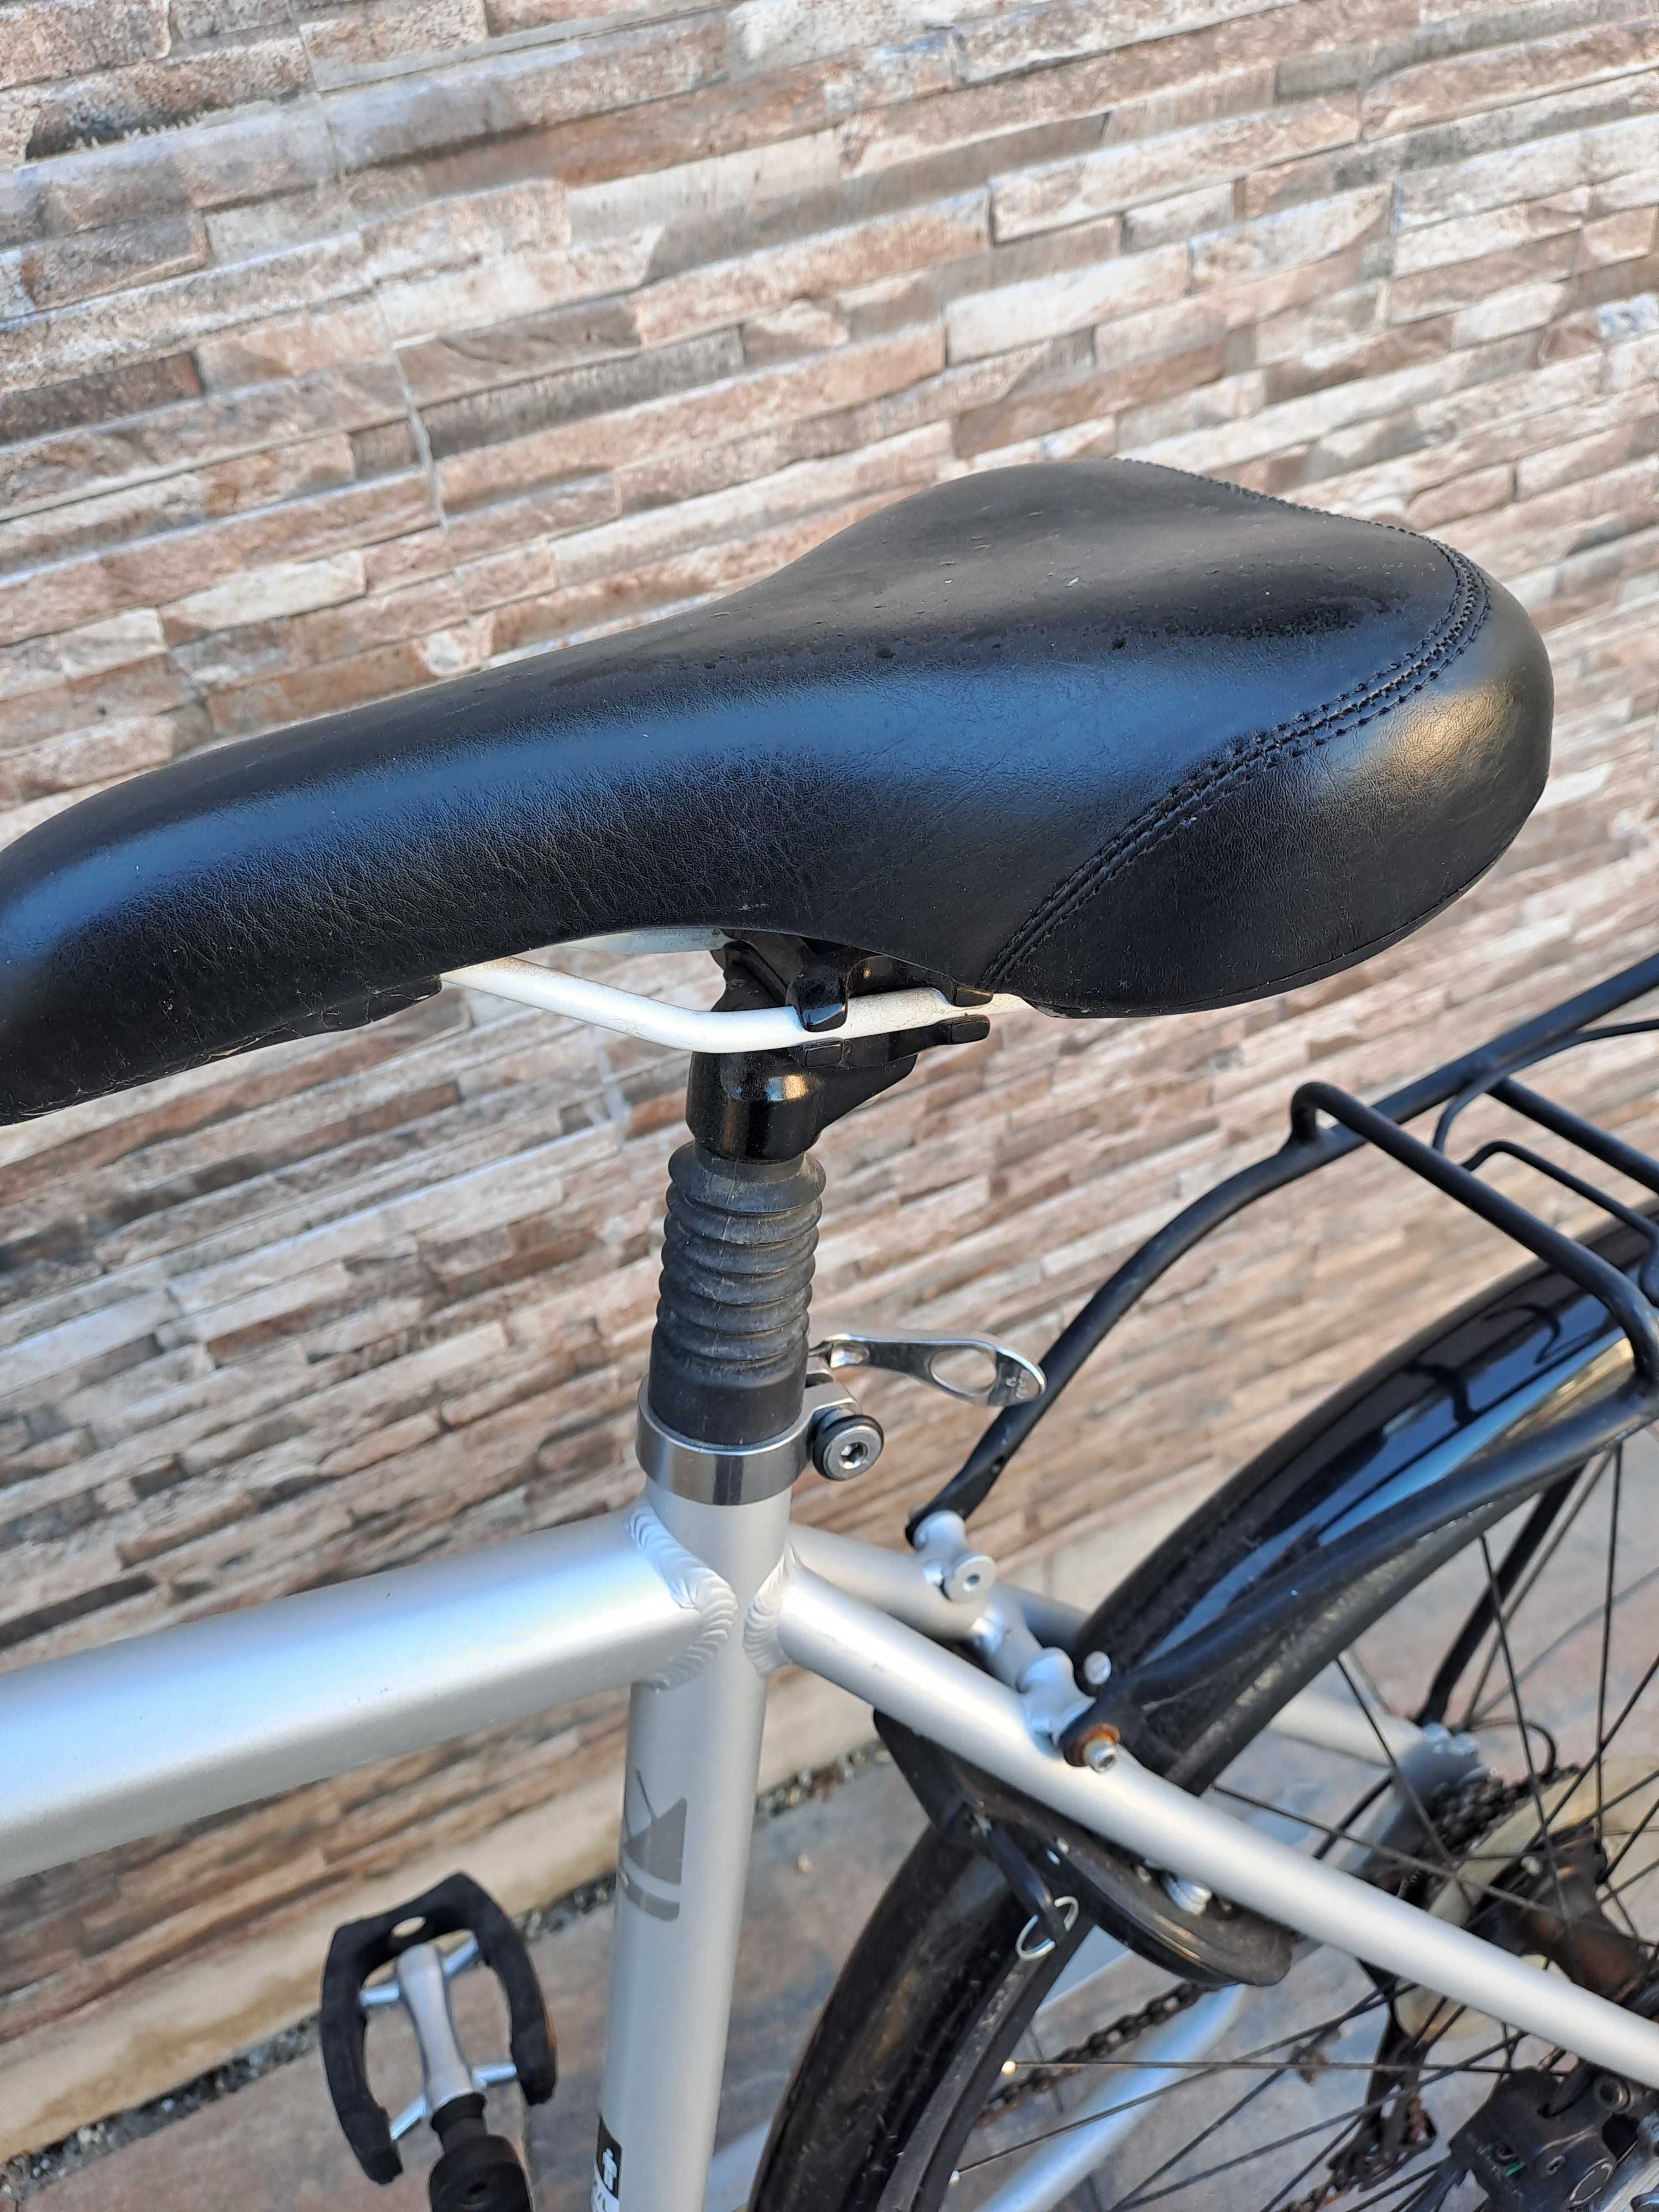 Bicicleta cu frânele hidraulice